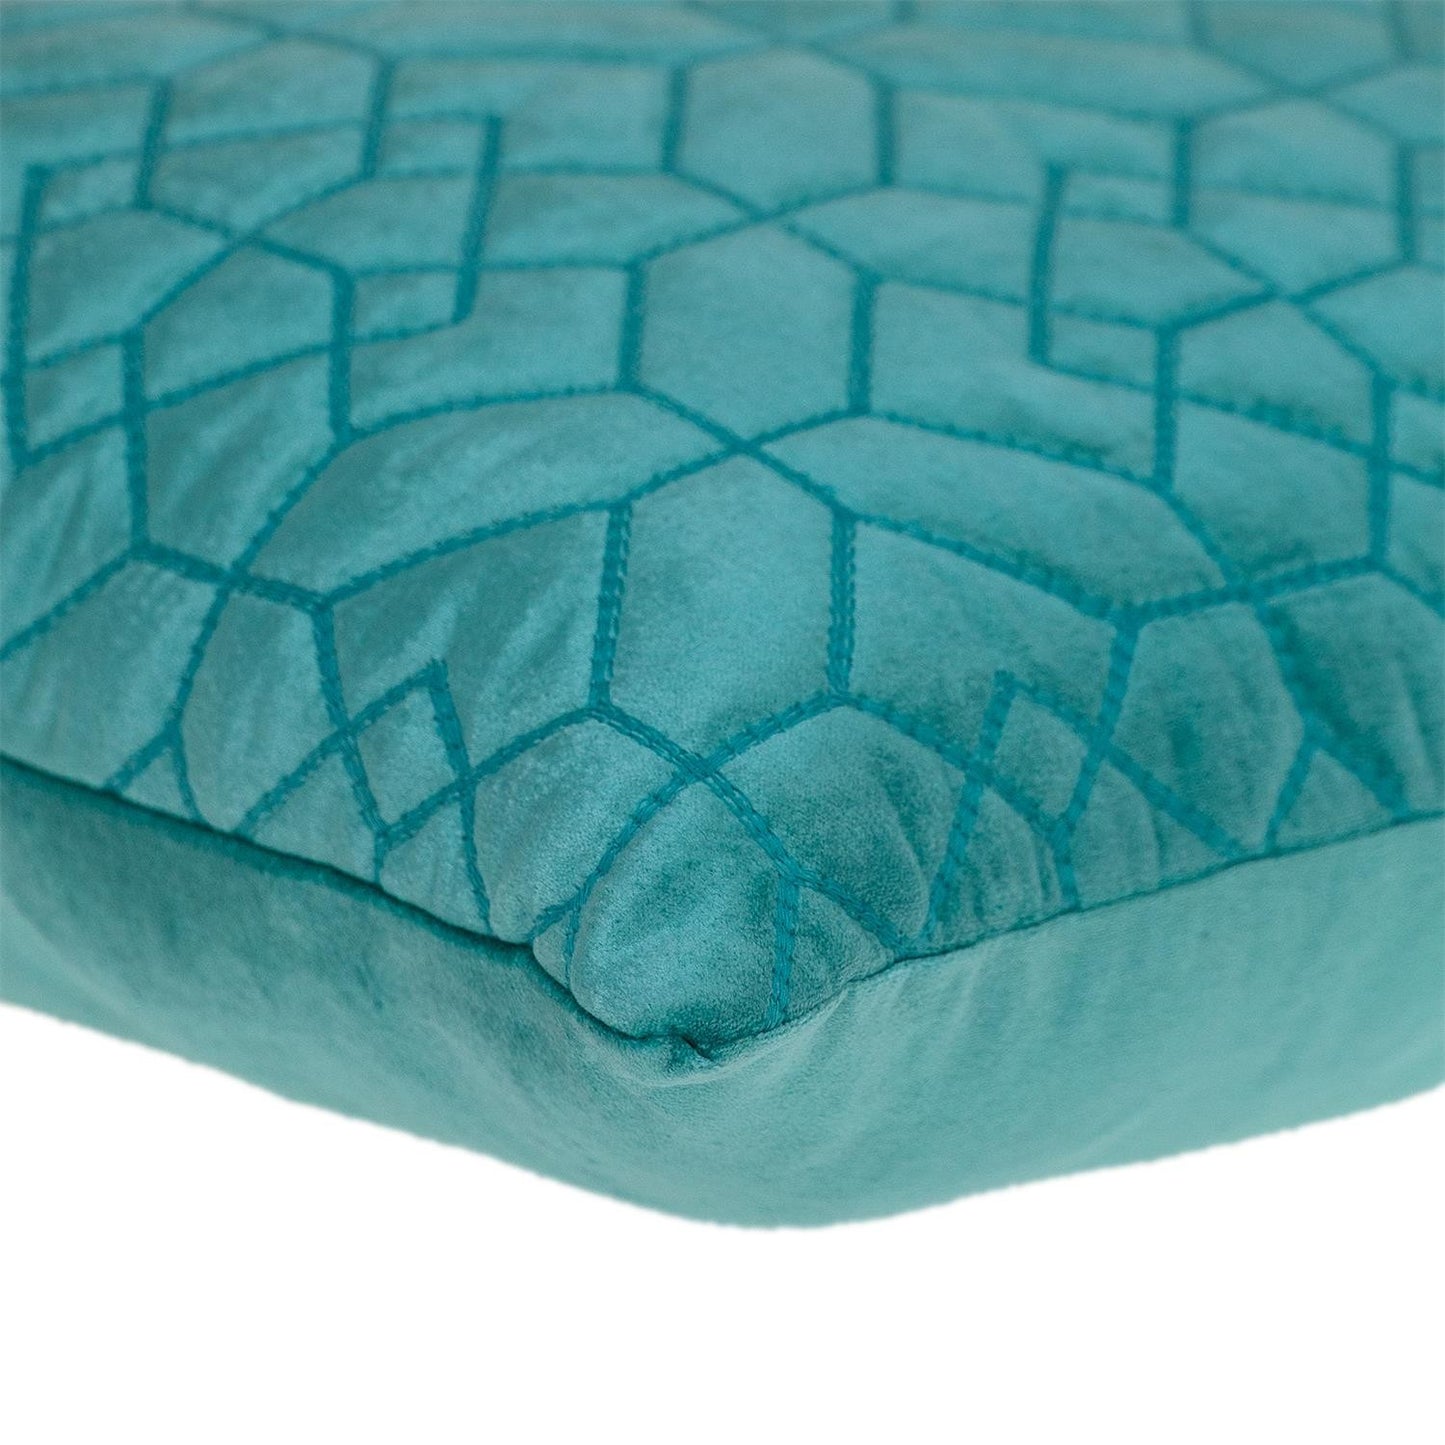 Aqua Quilted Velvet Geo Decorative Throw Pillow